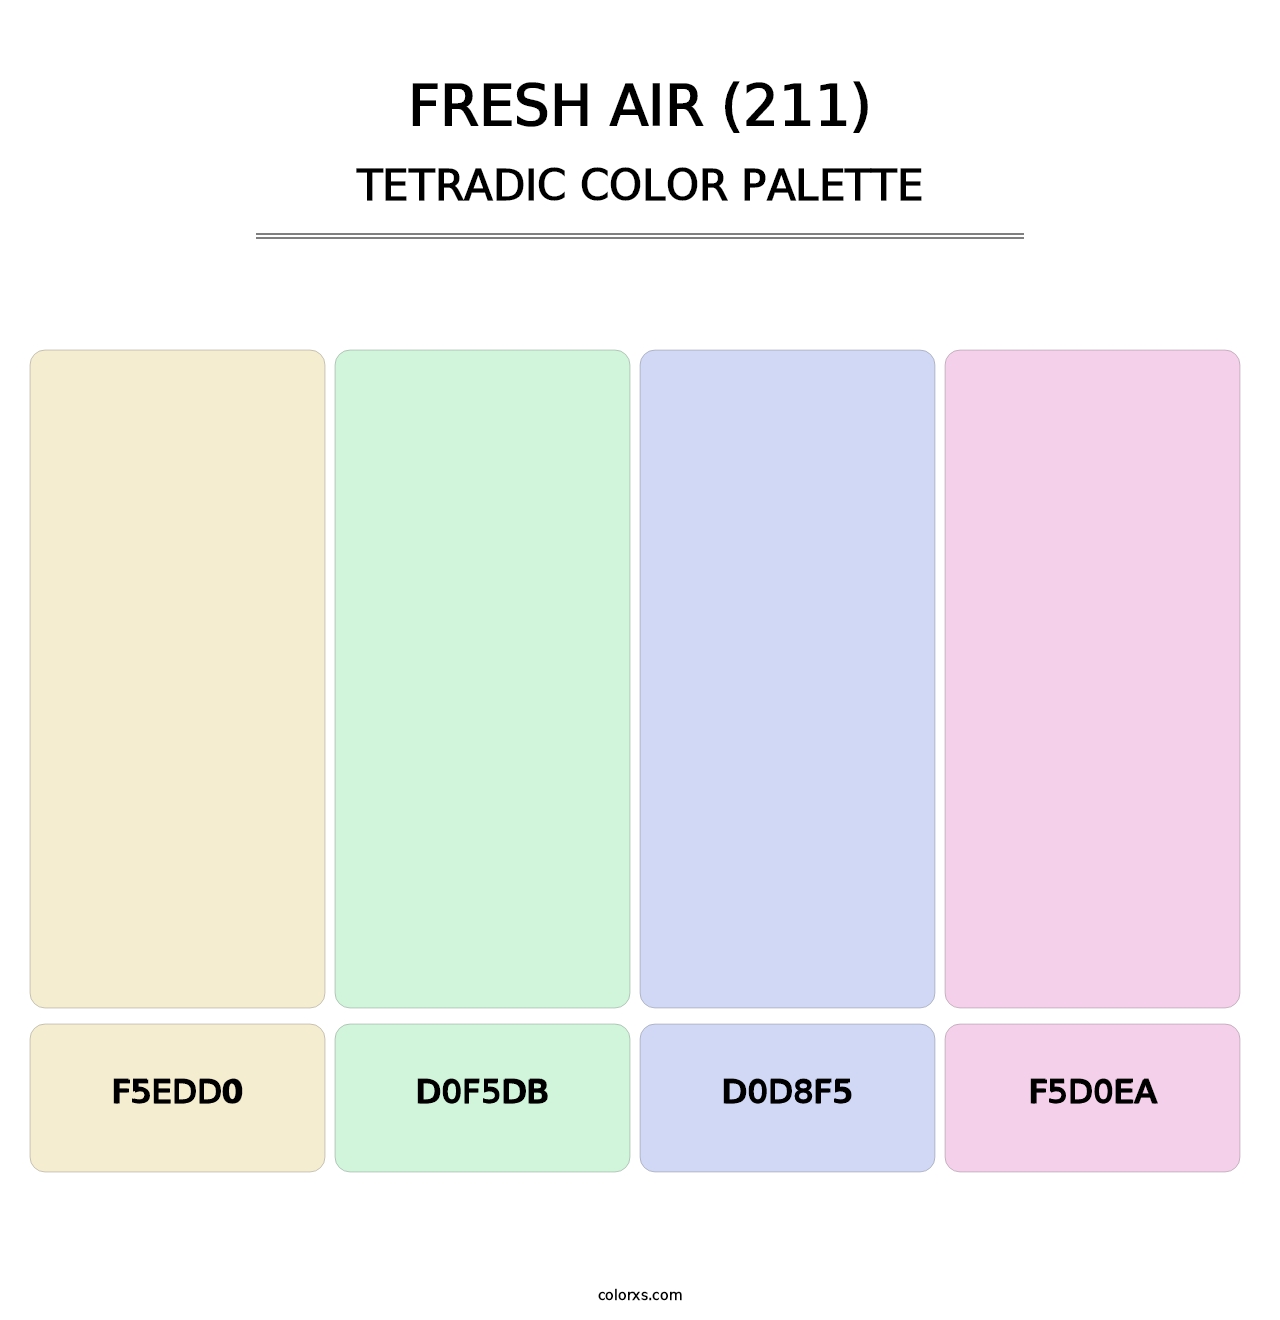 Fresh Air (211) - Tetradic Color Palette